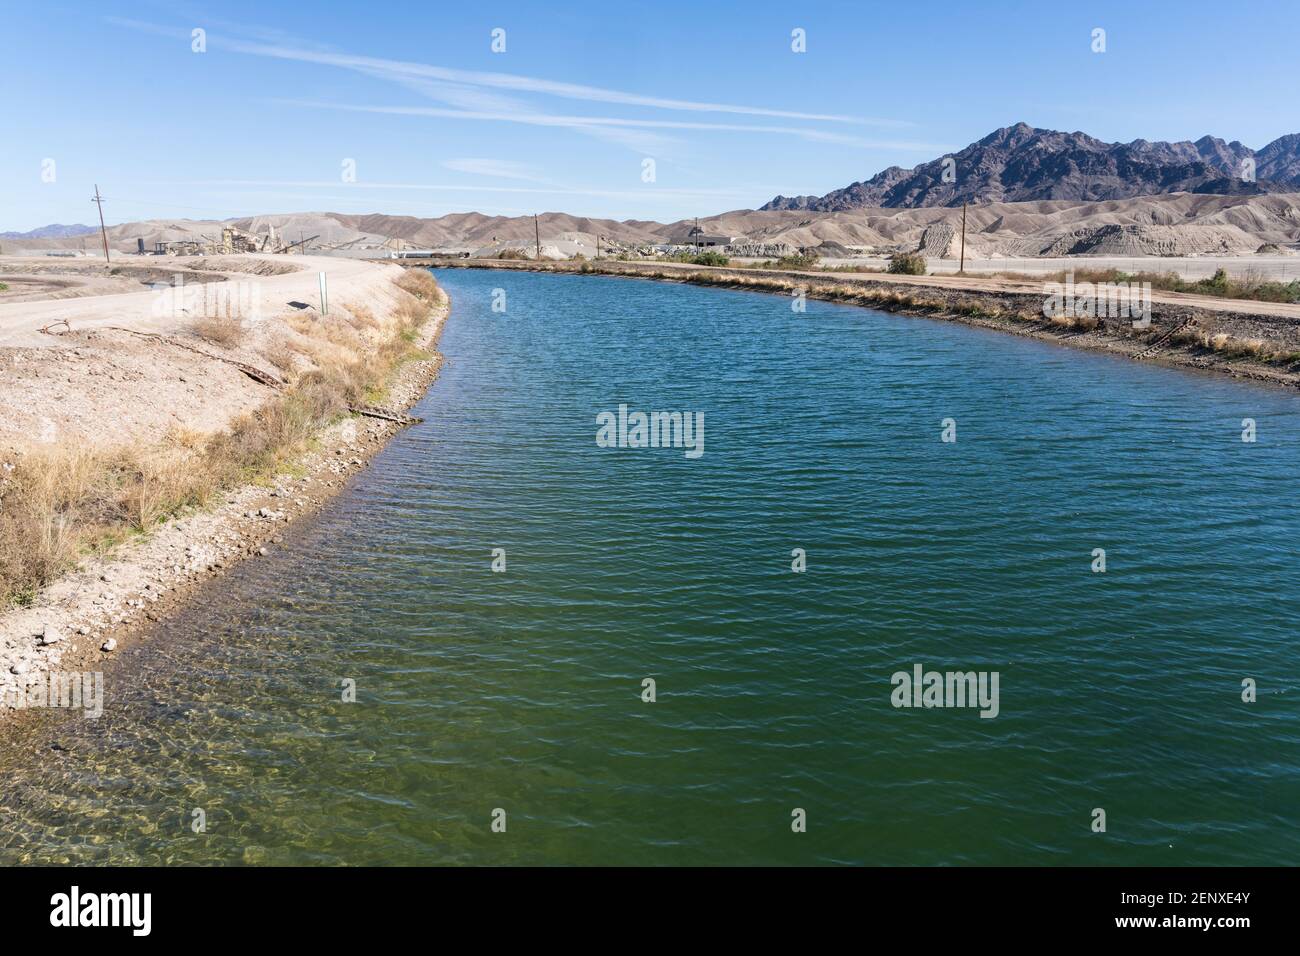 Le canal Mohawk de Wellton fait partie du district d'irrigation de Yuma, qui fournit de l'eau du fleuve Colorado pour l'agriculture à Yuma, en Arizona. Banque D'Images